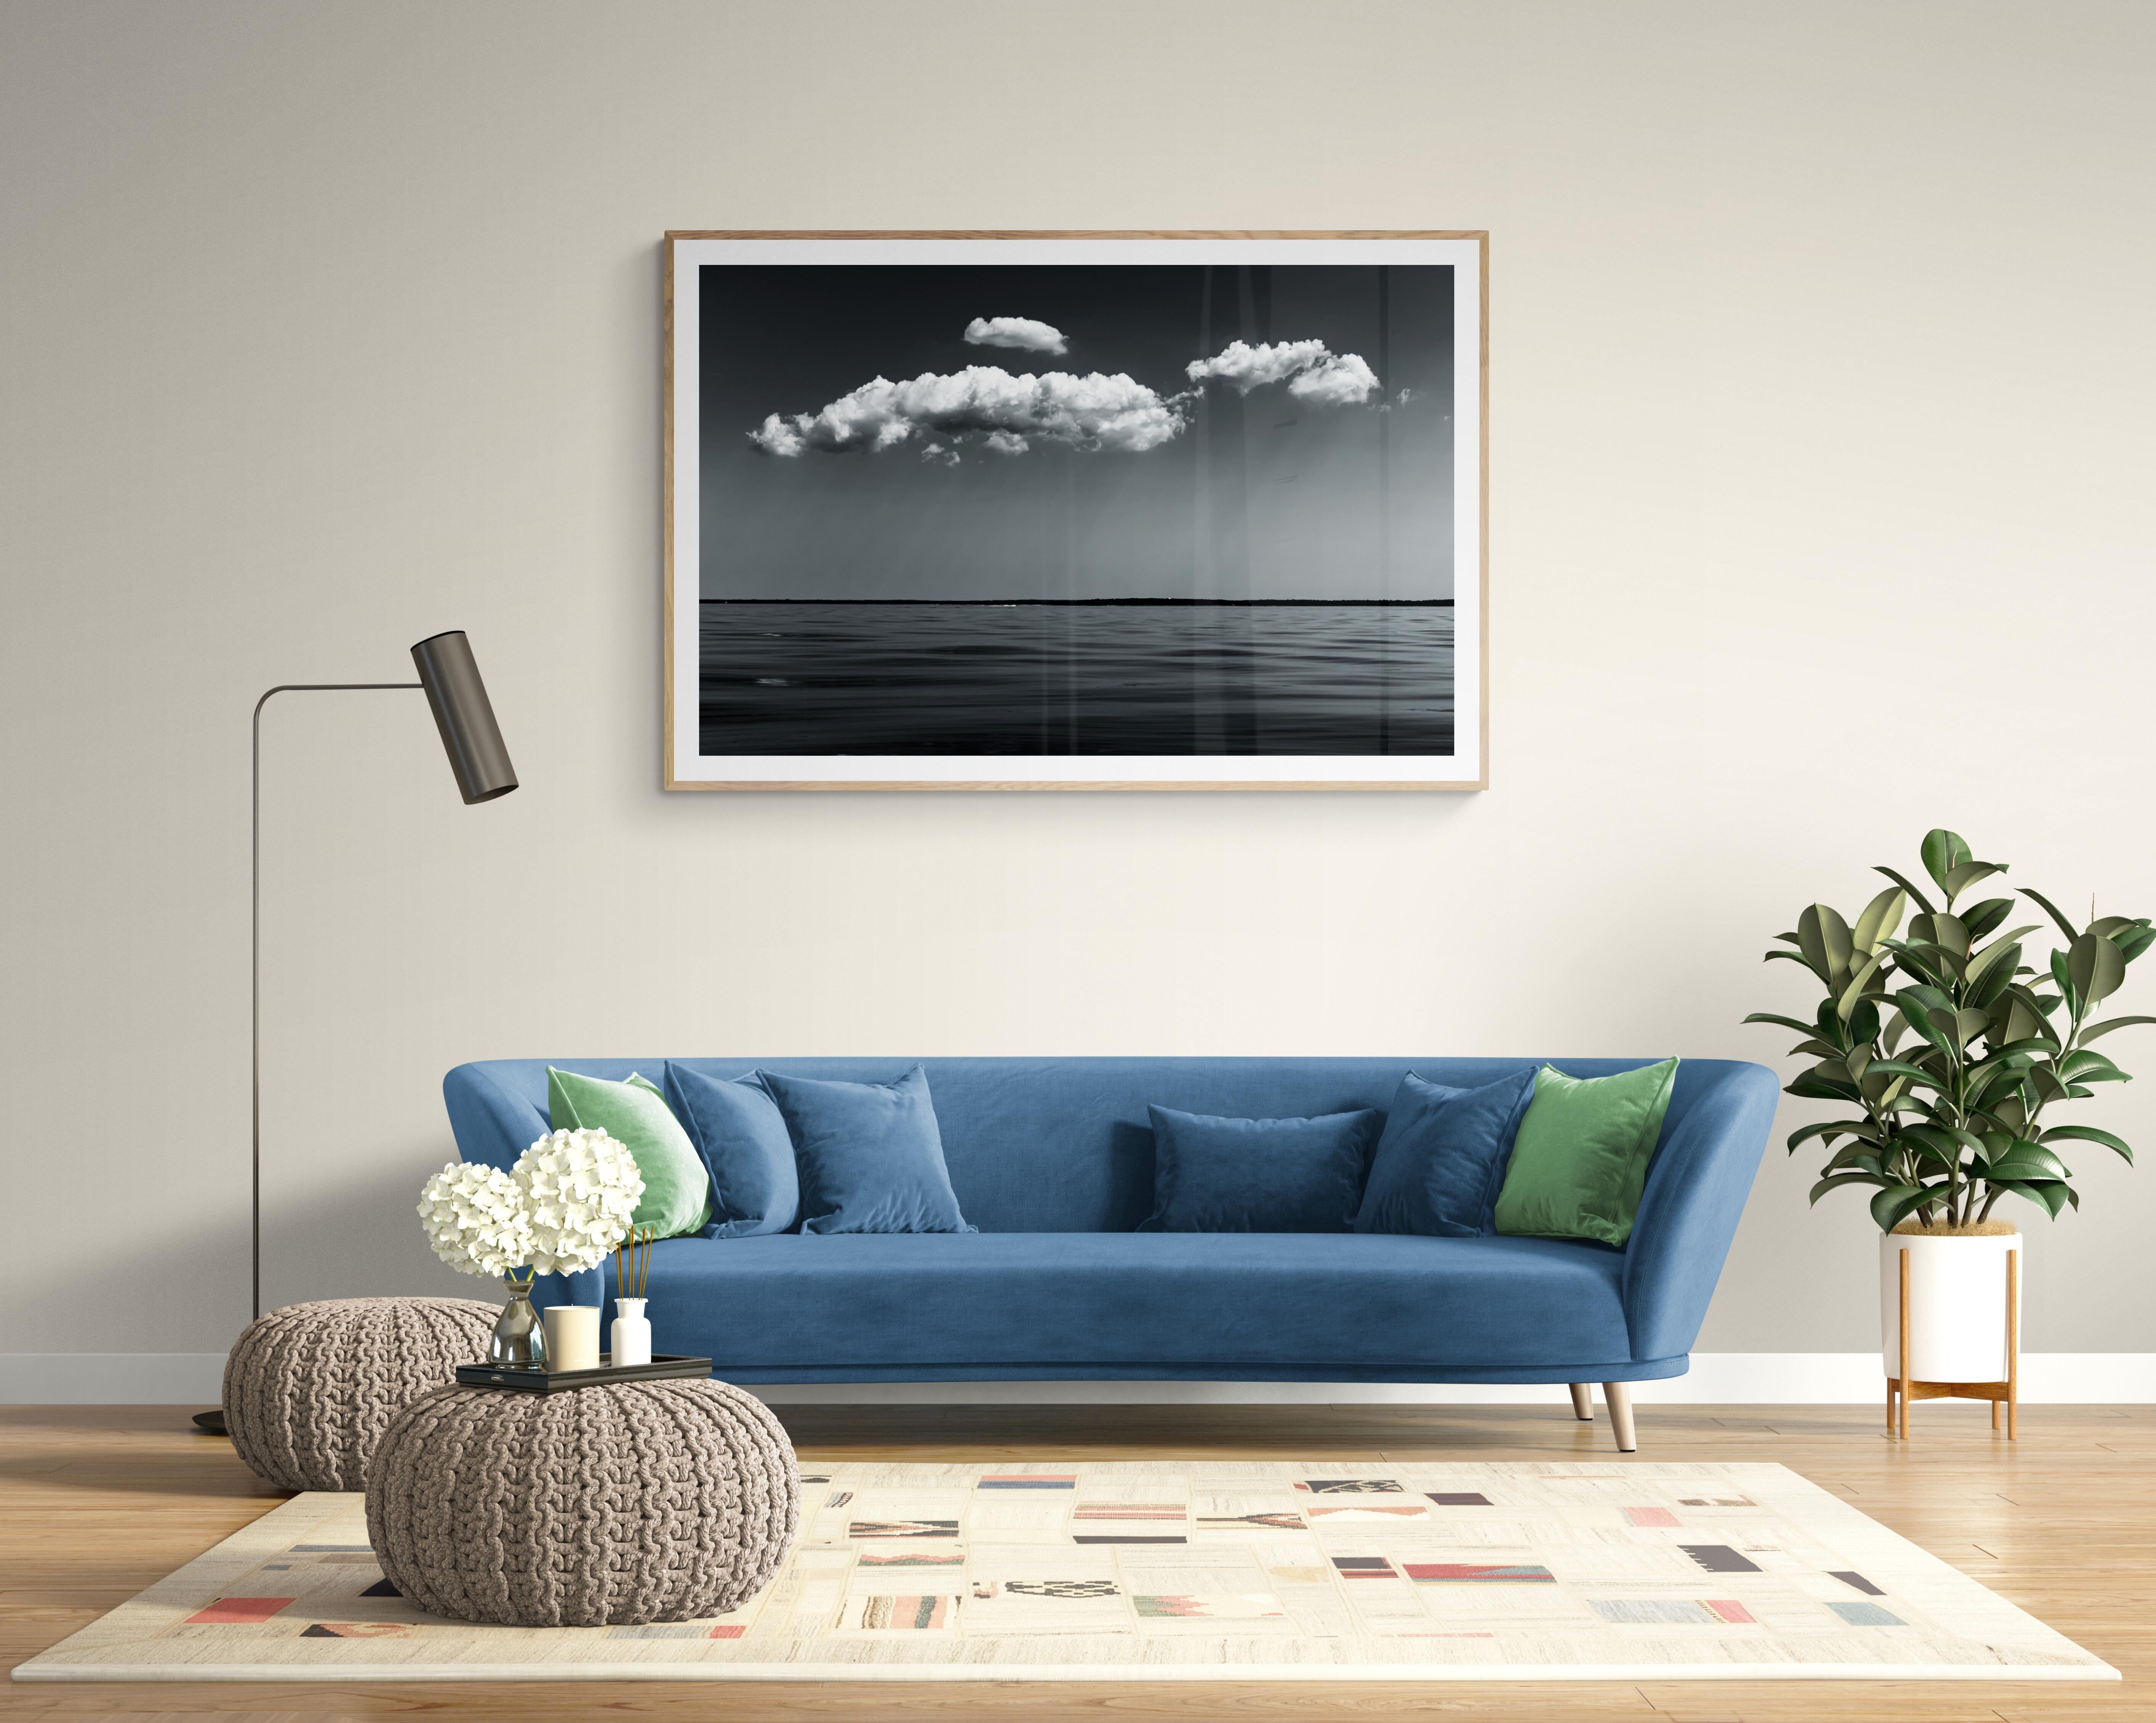 Schwarz-Weiß-Fotografie in limitierter Auflage – „ Meereswolken #4“ 20 x 24 – Photograph von Howard Lewis